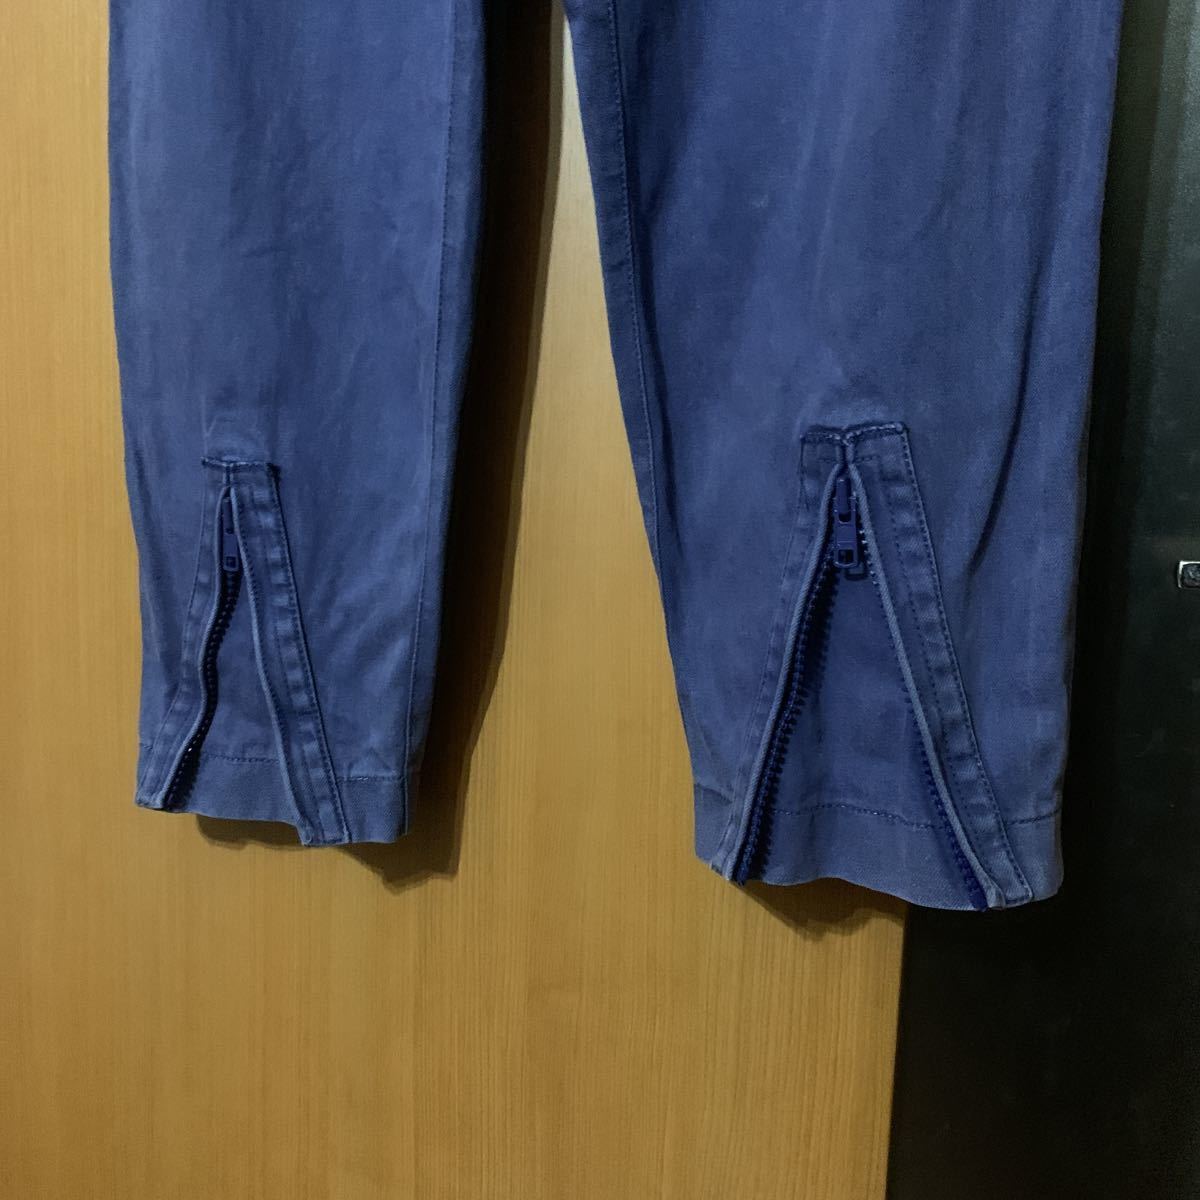  популярный обычная цена 45000 иен [3.1phillip lim] хлопок linen легкий брюки 3.1 Philip обод 